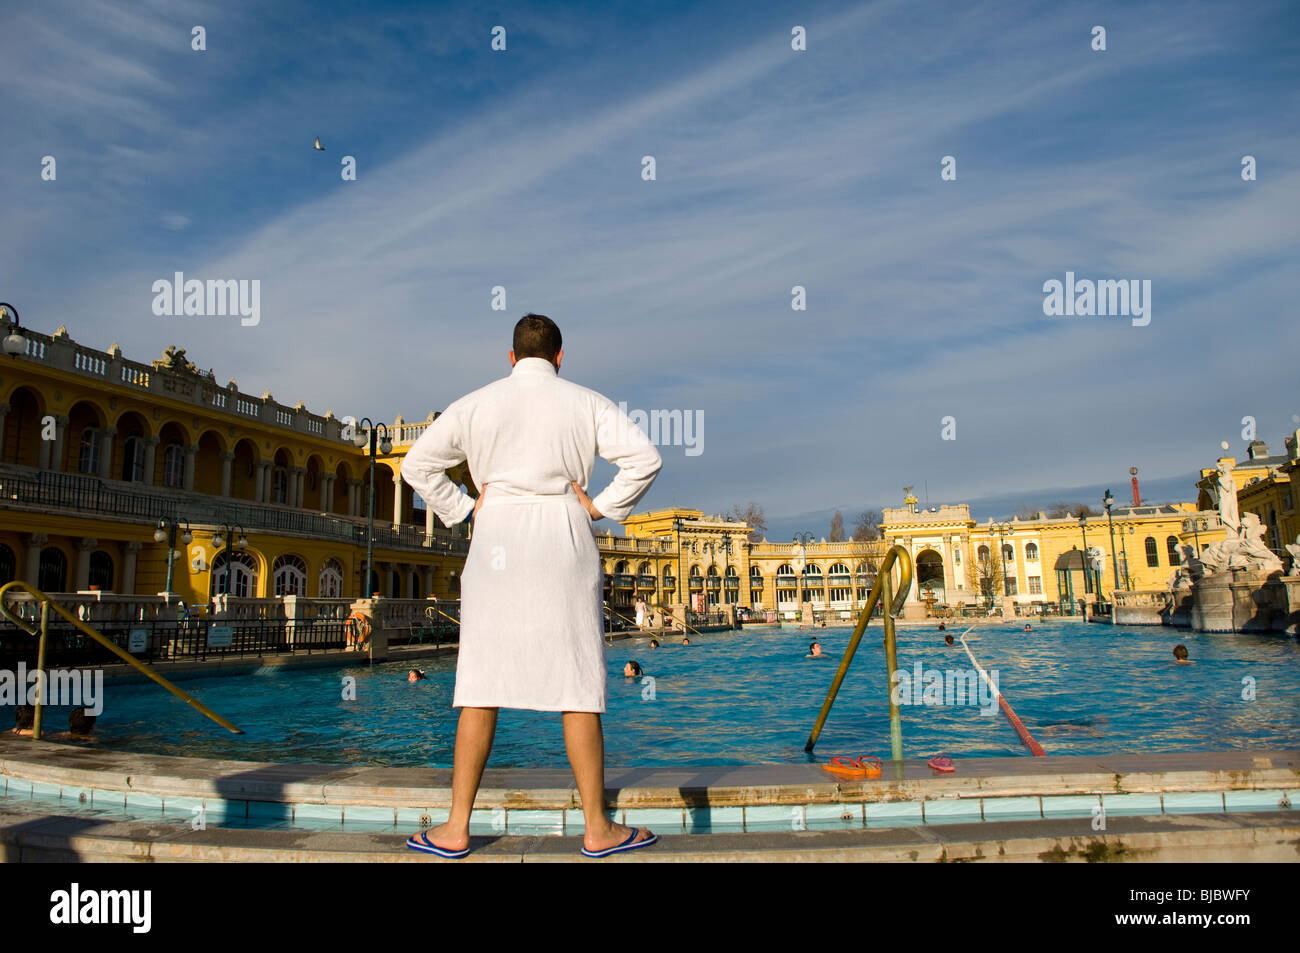 a man in Szechenyi Bath, budapest, hungary Stock Photo